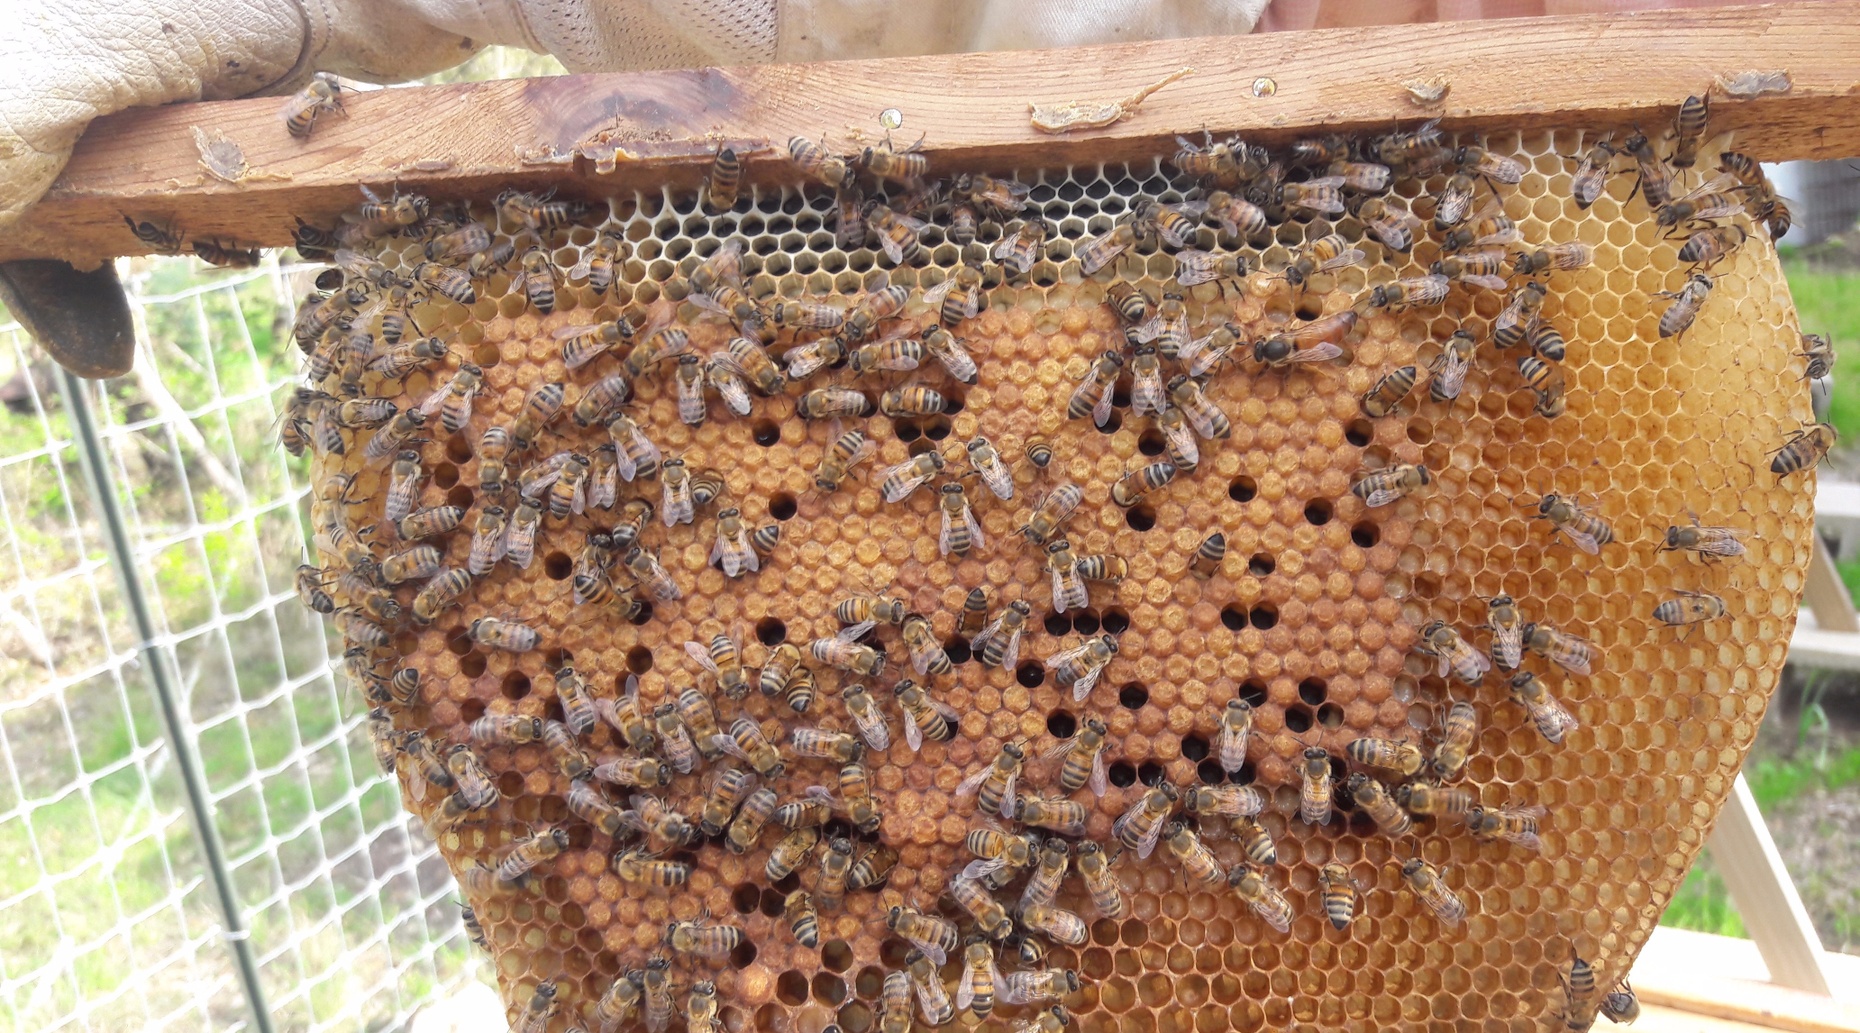 Beekeeping 101 - Getting Started in Beekeeping